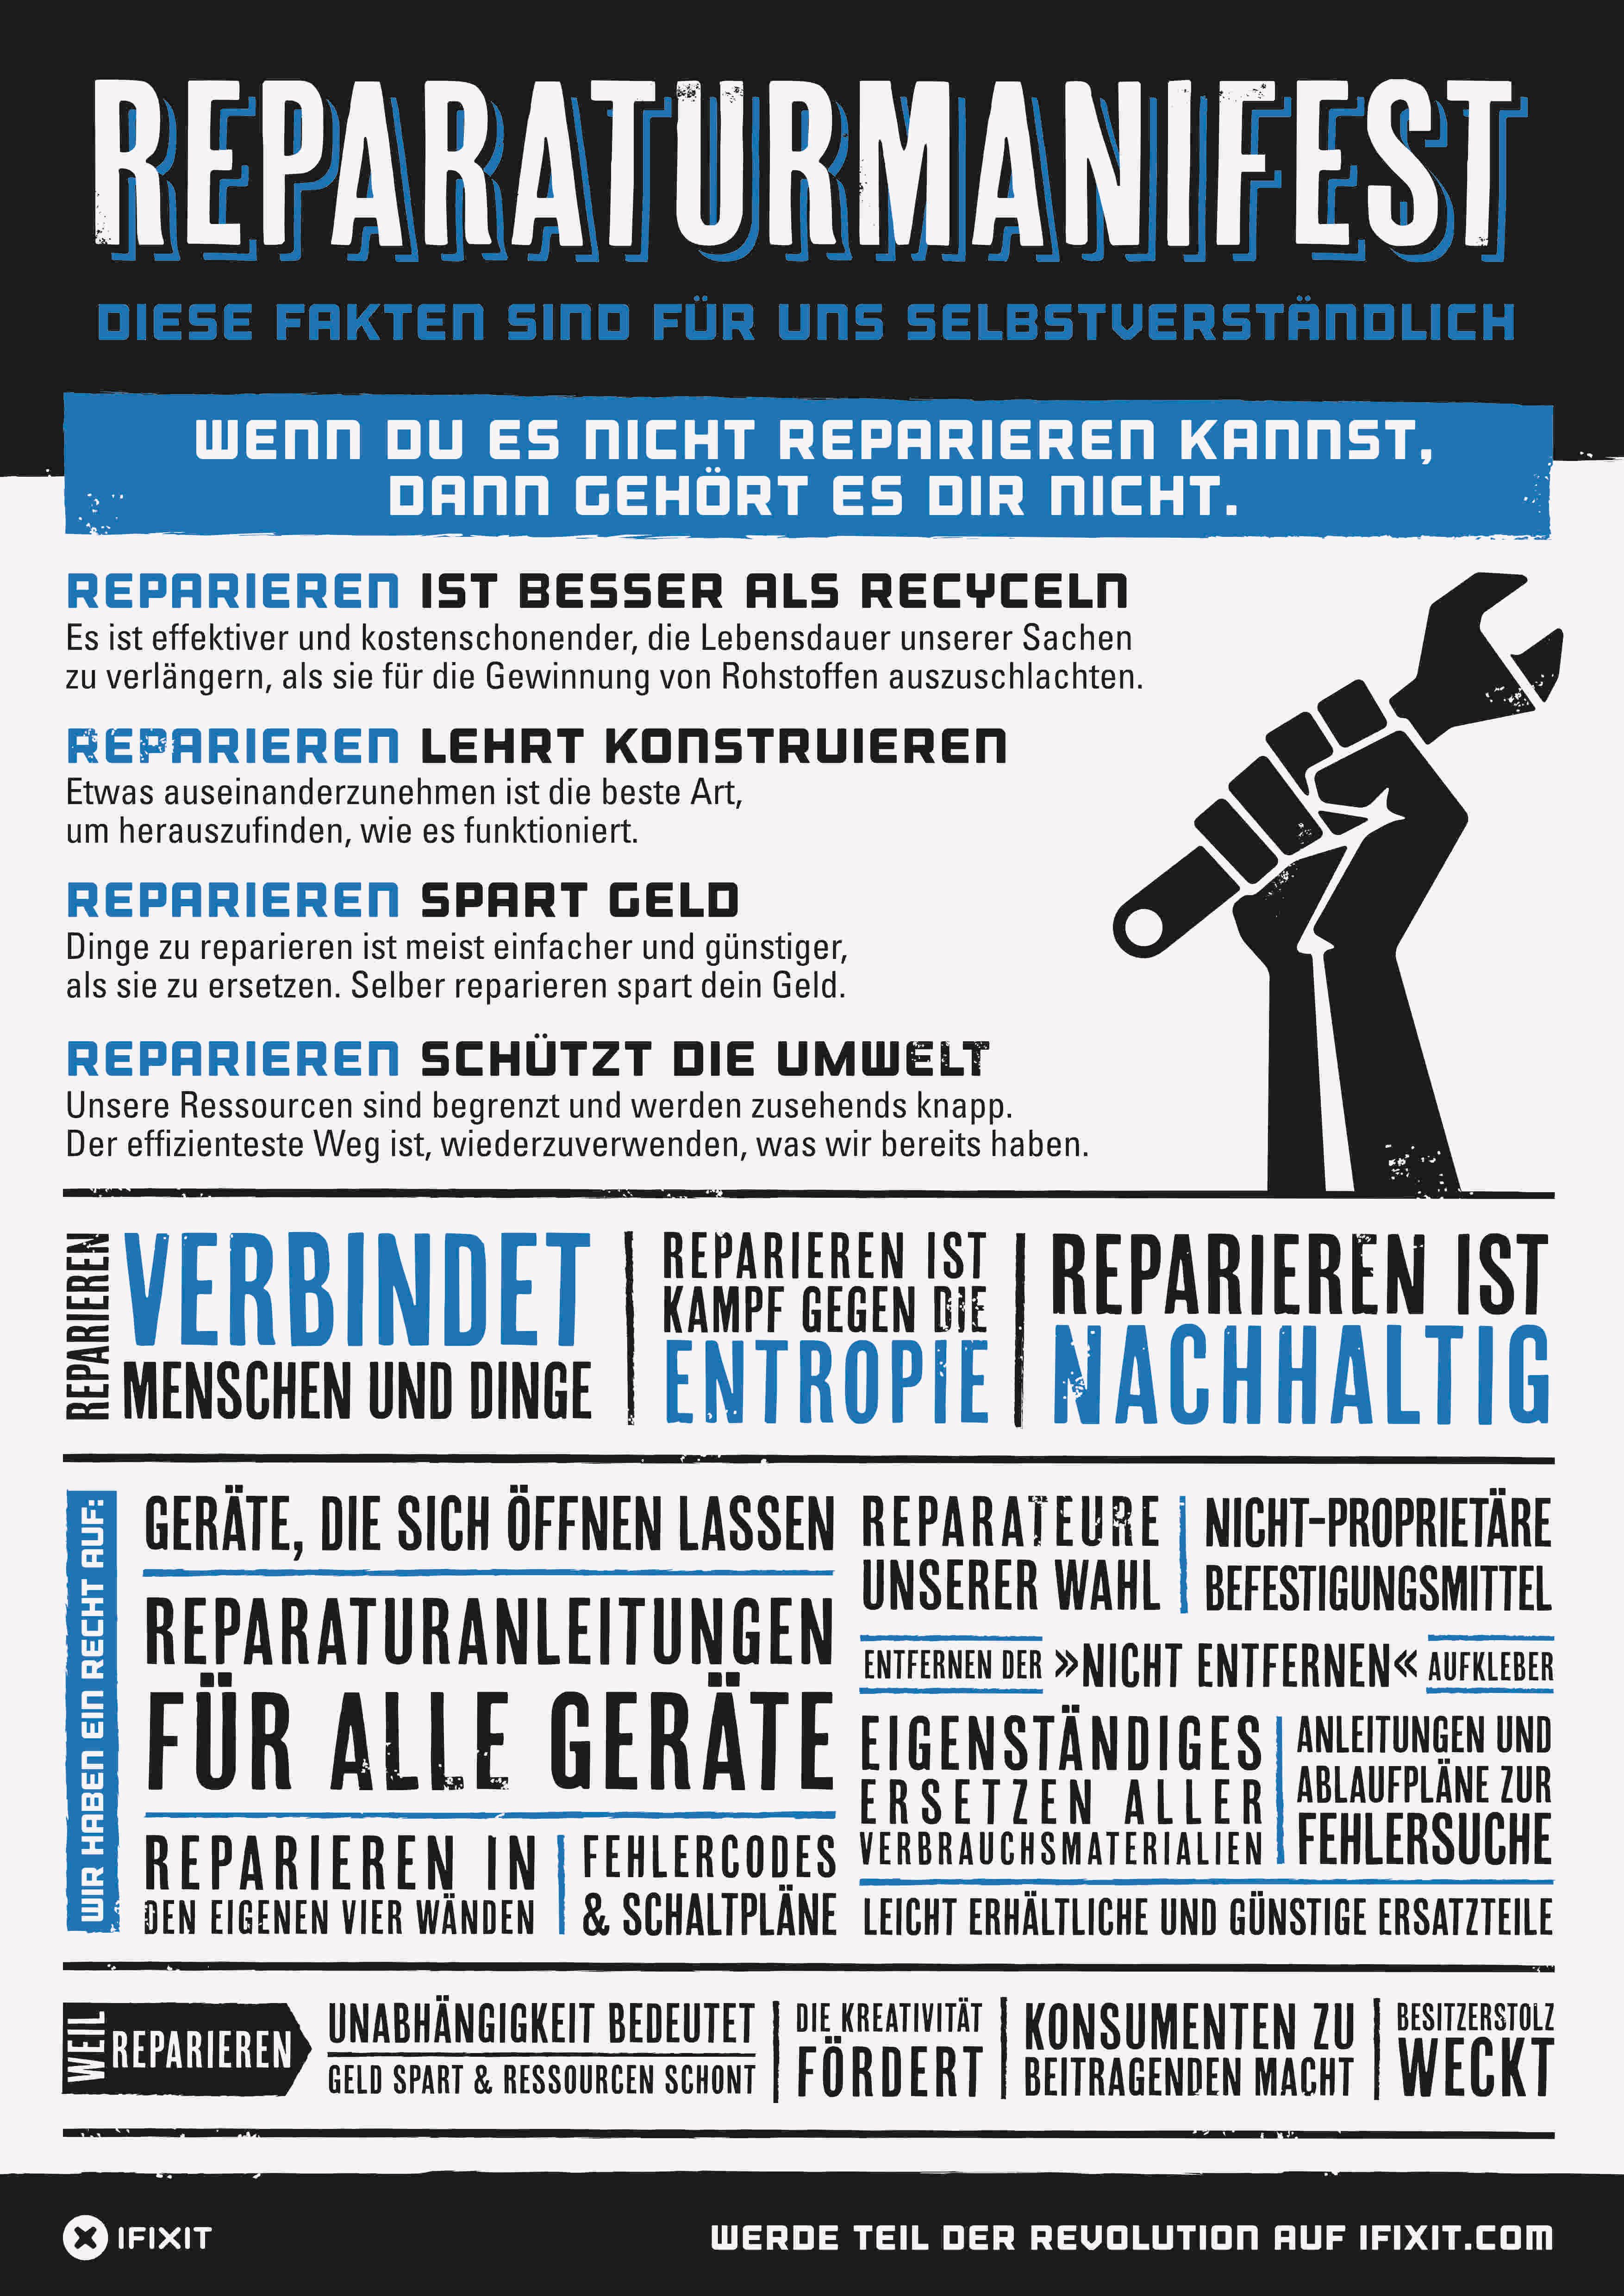 iFixit Repair Manifesto